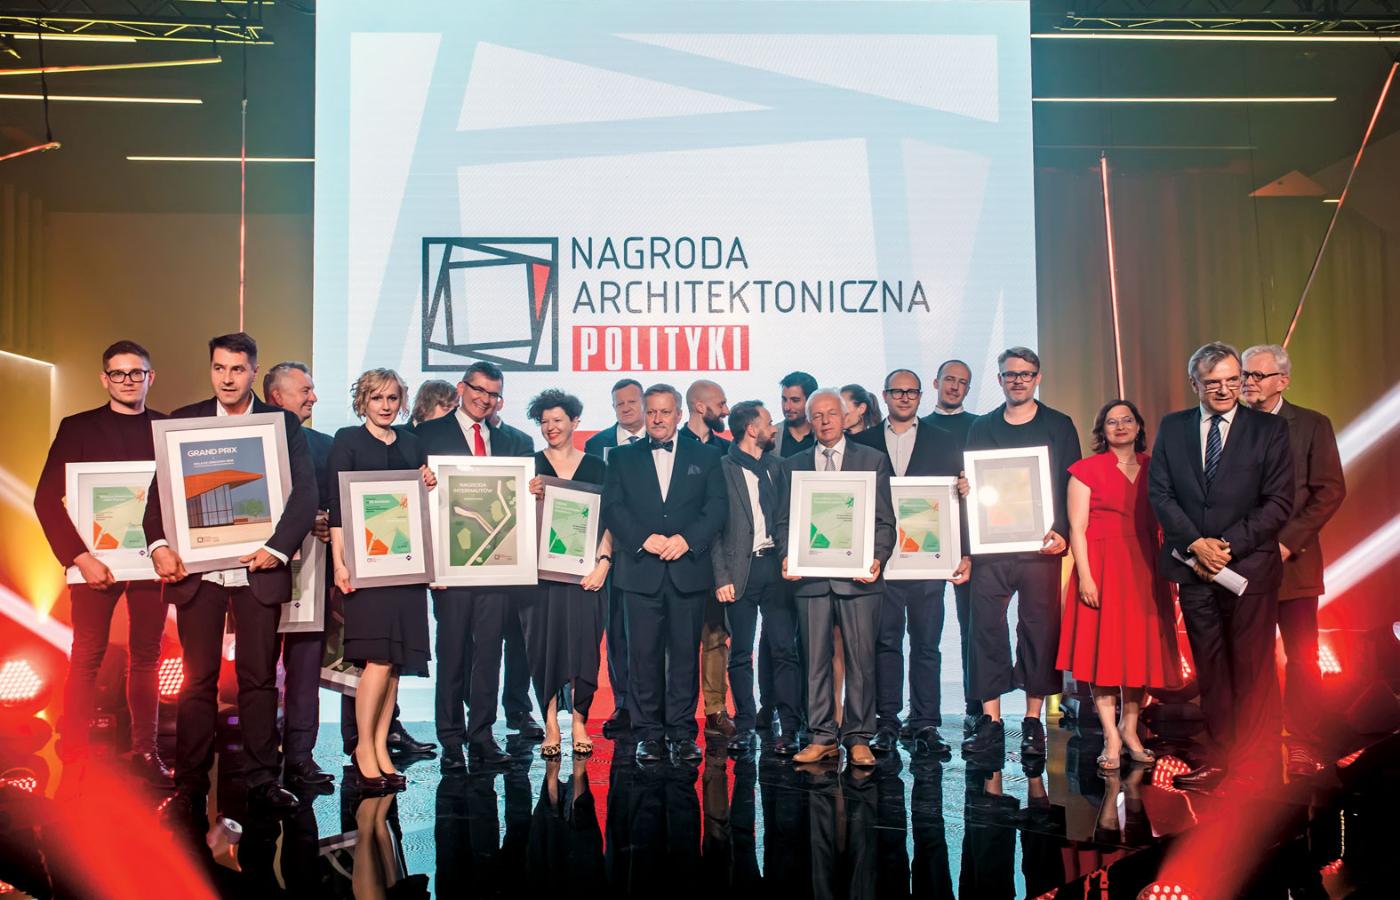 Laureaci Nagrody oraz prowadzący galę Jerzy Baczyński i Piotr Sarzyński.